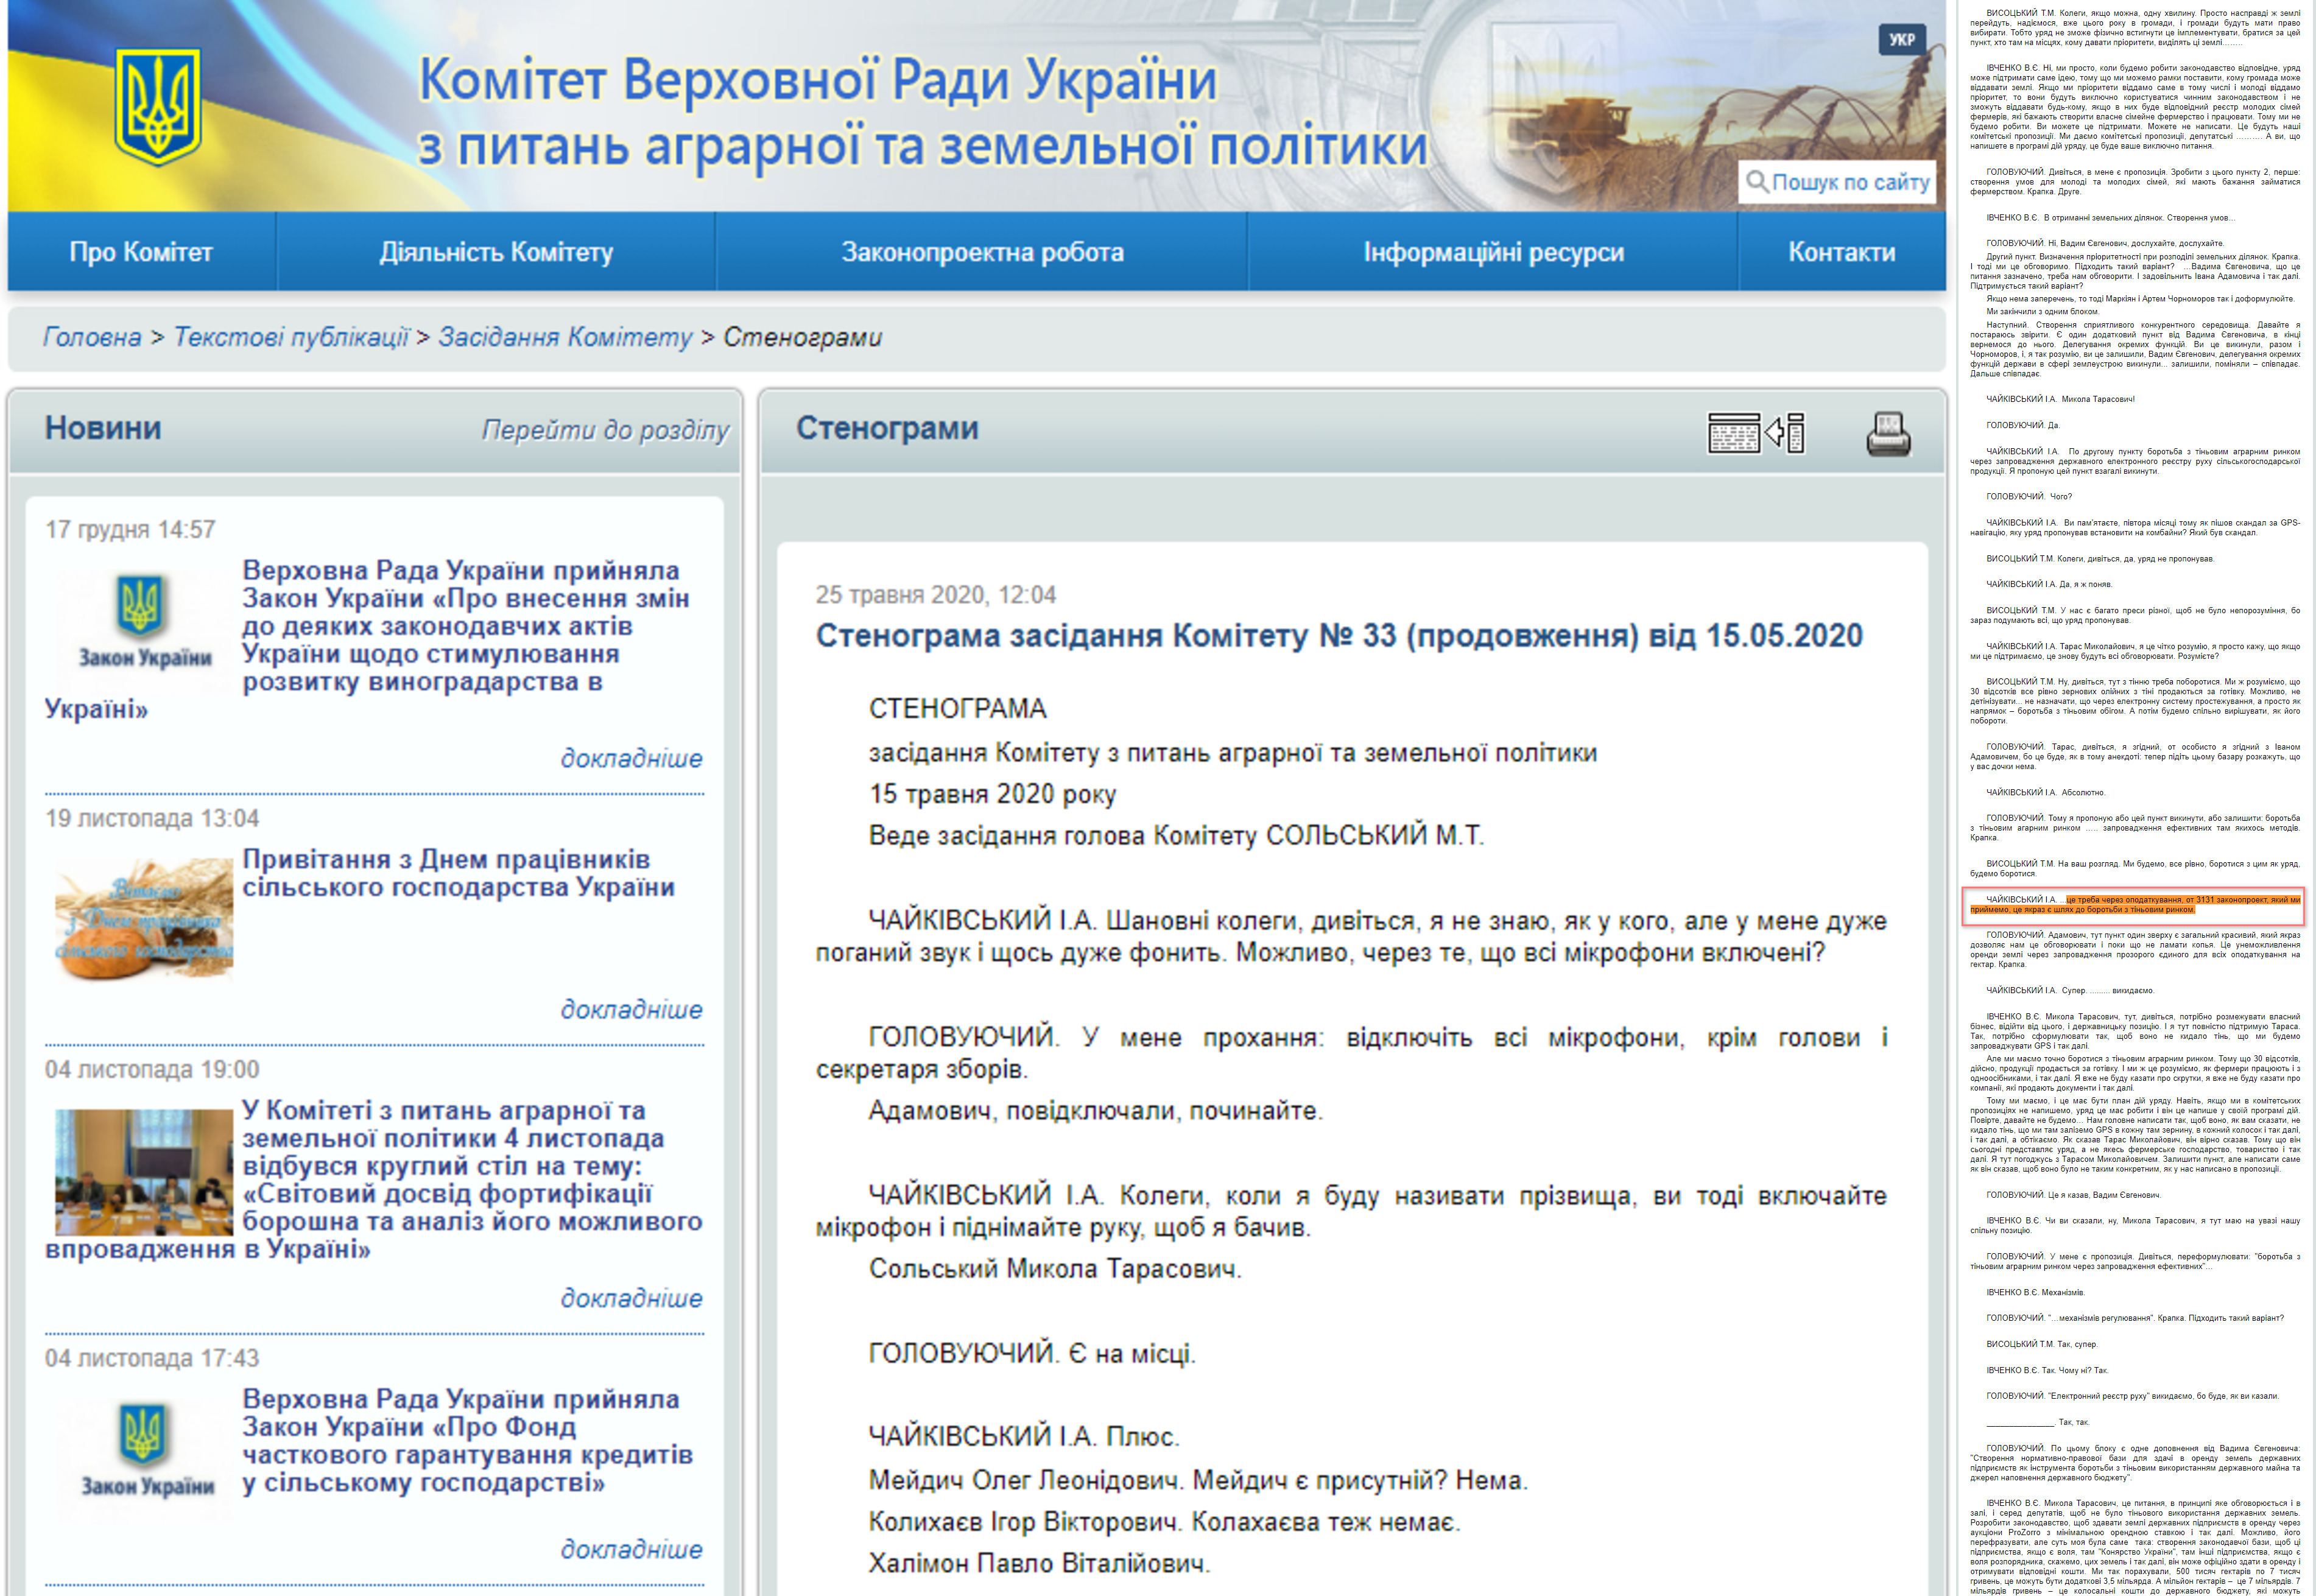 http://komagropolit.rada.gov.ua/news/zasidKomit/stenogr_zk/73897.html